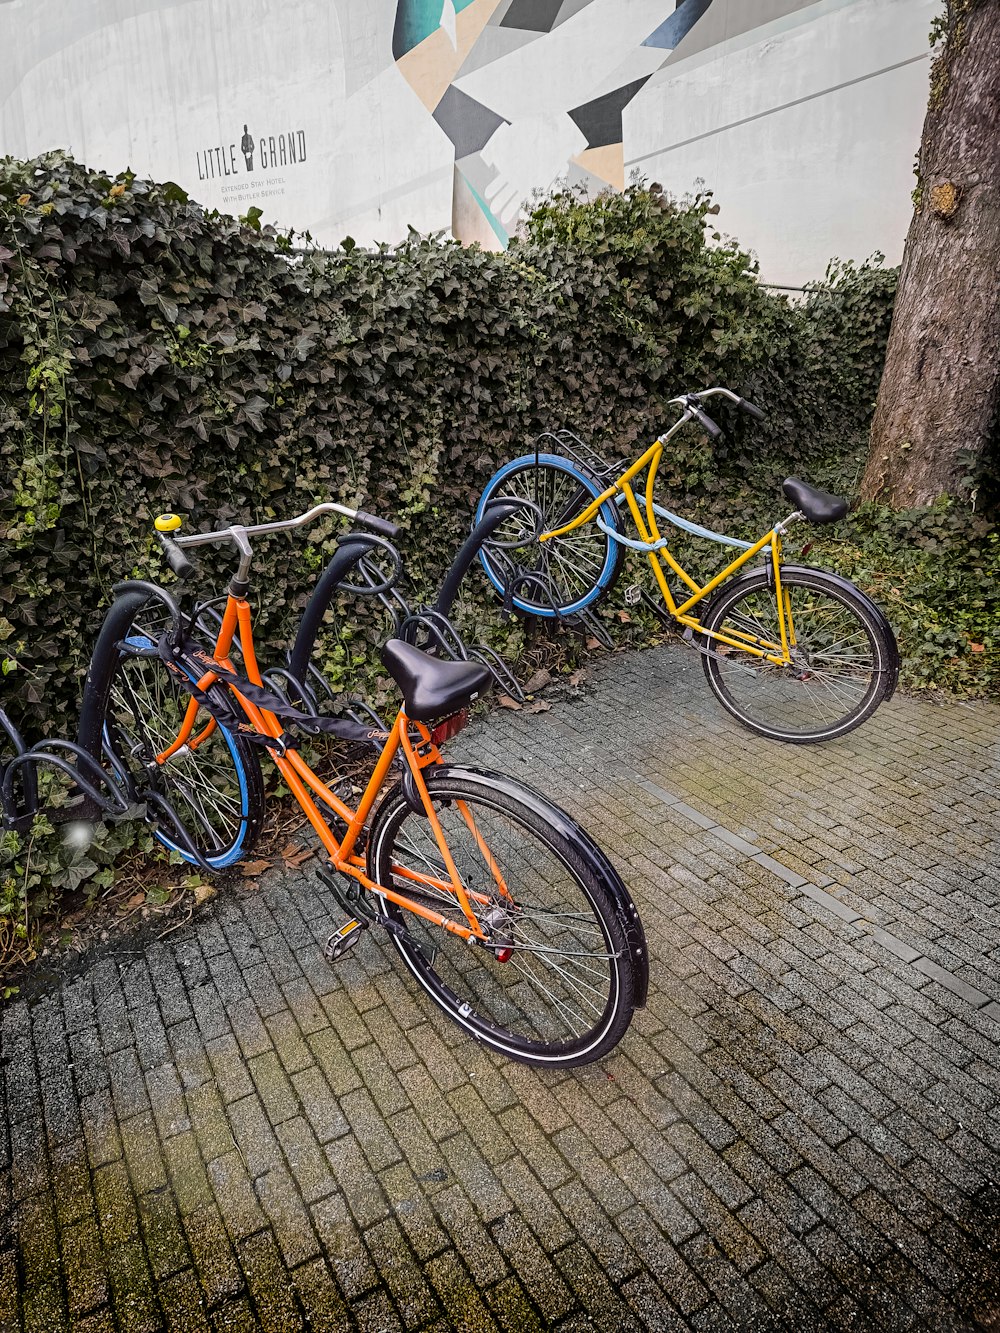 una fila di biciclette parcheggiate una accanto all'altra su un marciapiede